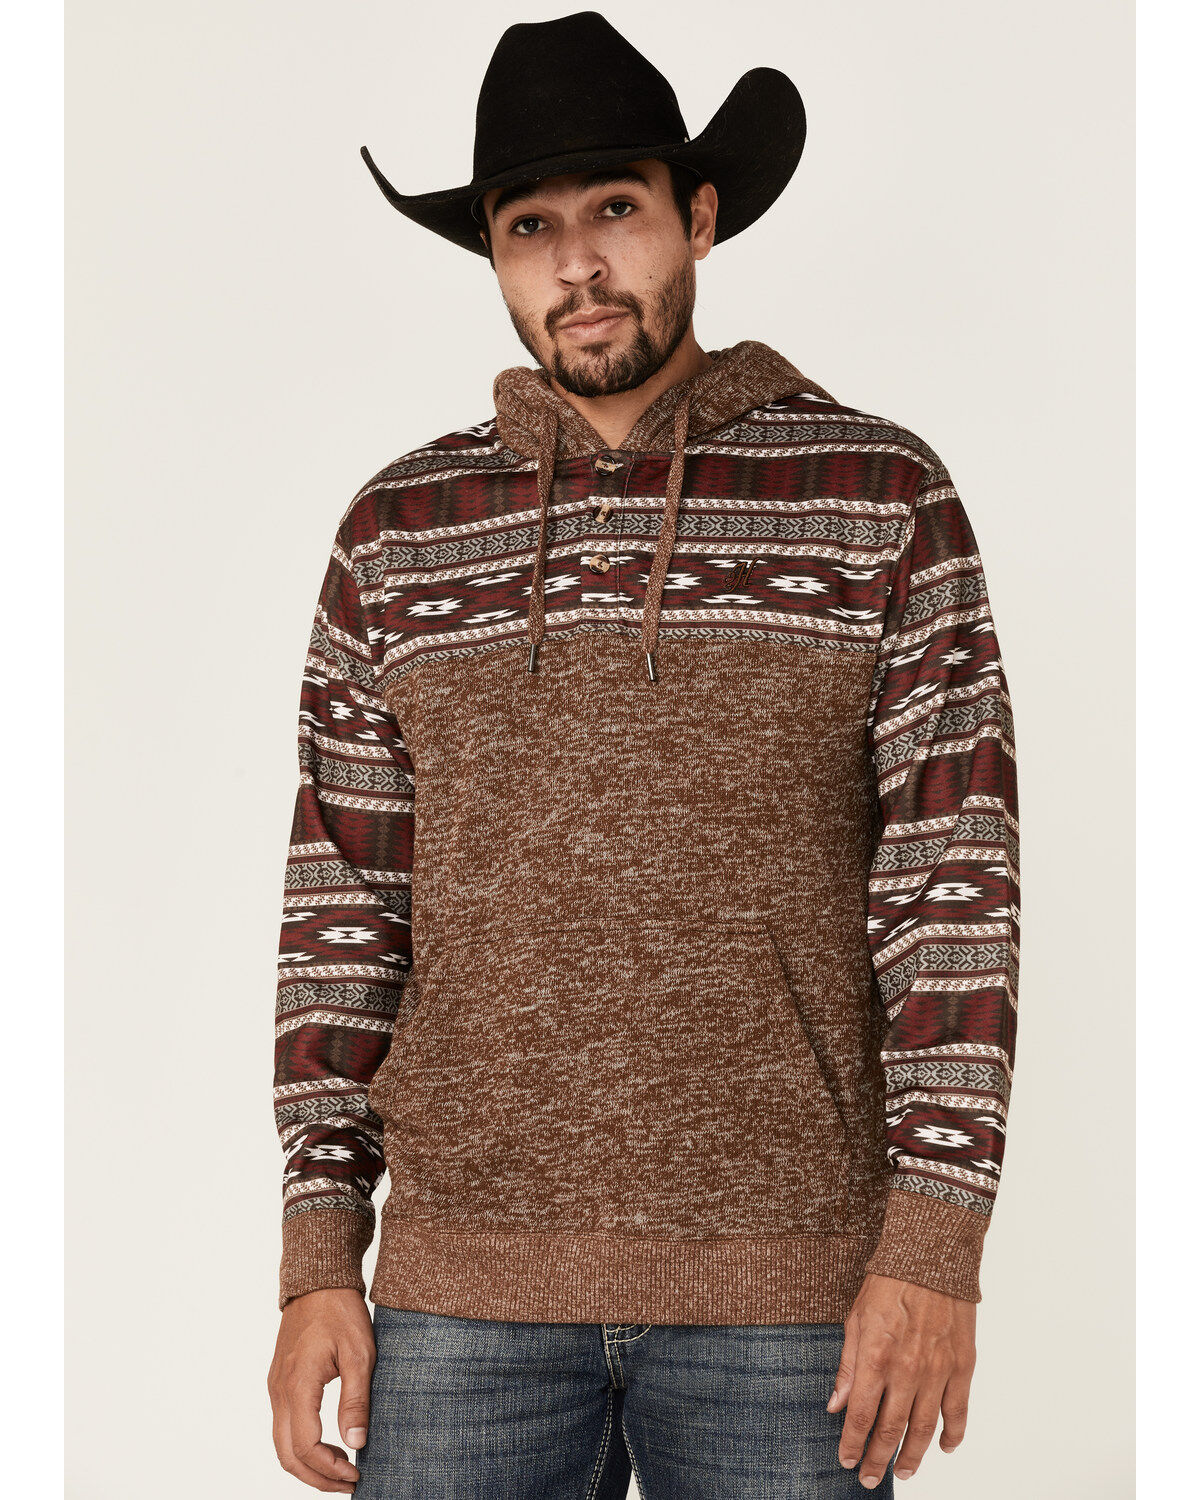 Mens Fuzzy Sherpa Pullover Western Aztec Sweater Fleece Jacket Winter Long Sleeve Sweatshirts Geometric Print Outwear Pocket 